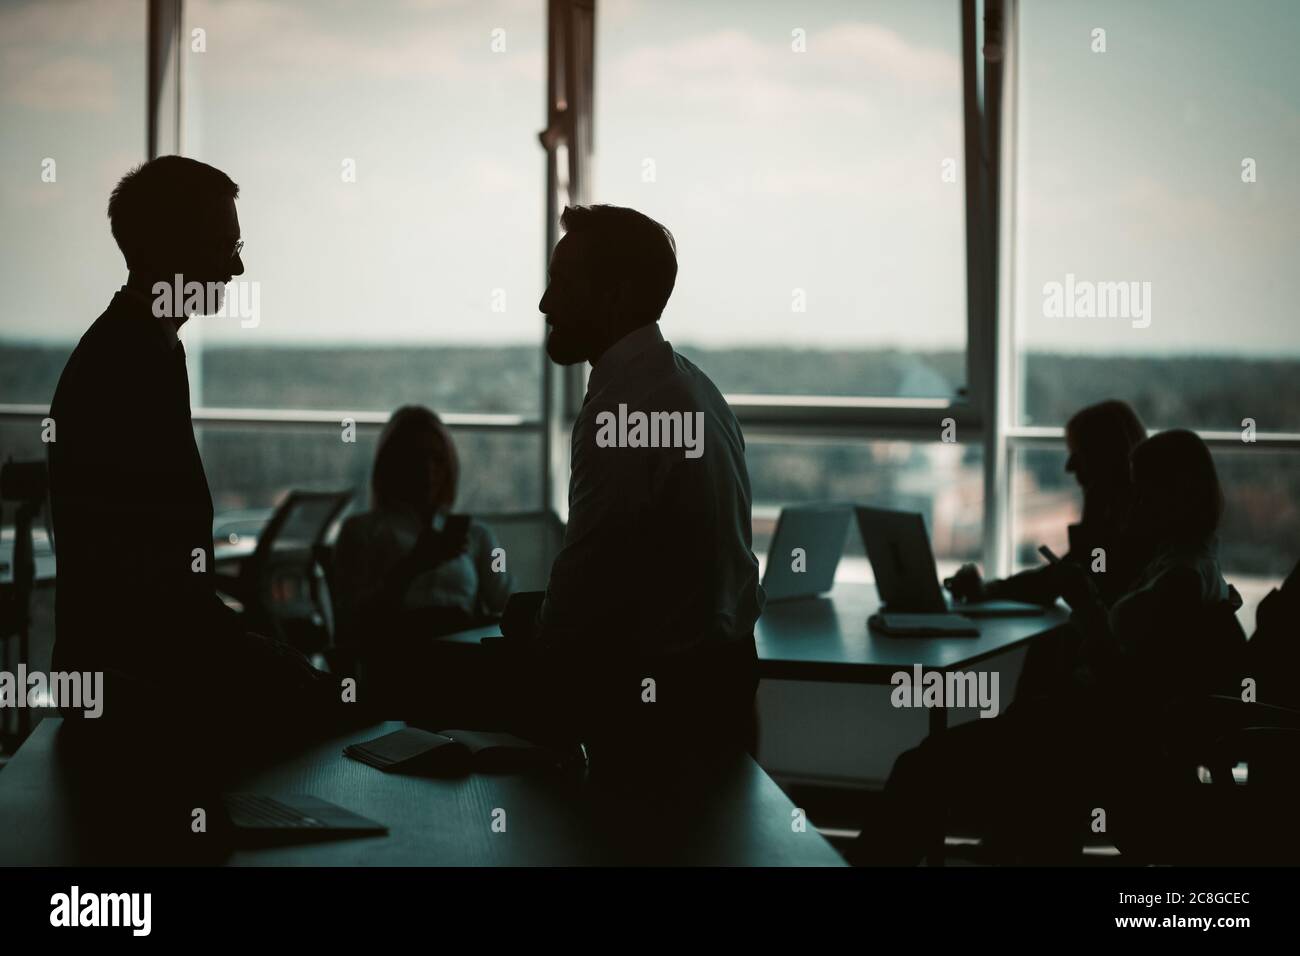 Silhouettes di uomini d'affari hanno discussione in interni di ufficio con le finestre enormi. Concetto di lavoro di squadra. Immagine colorata Foto Stock